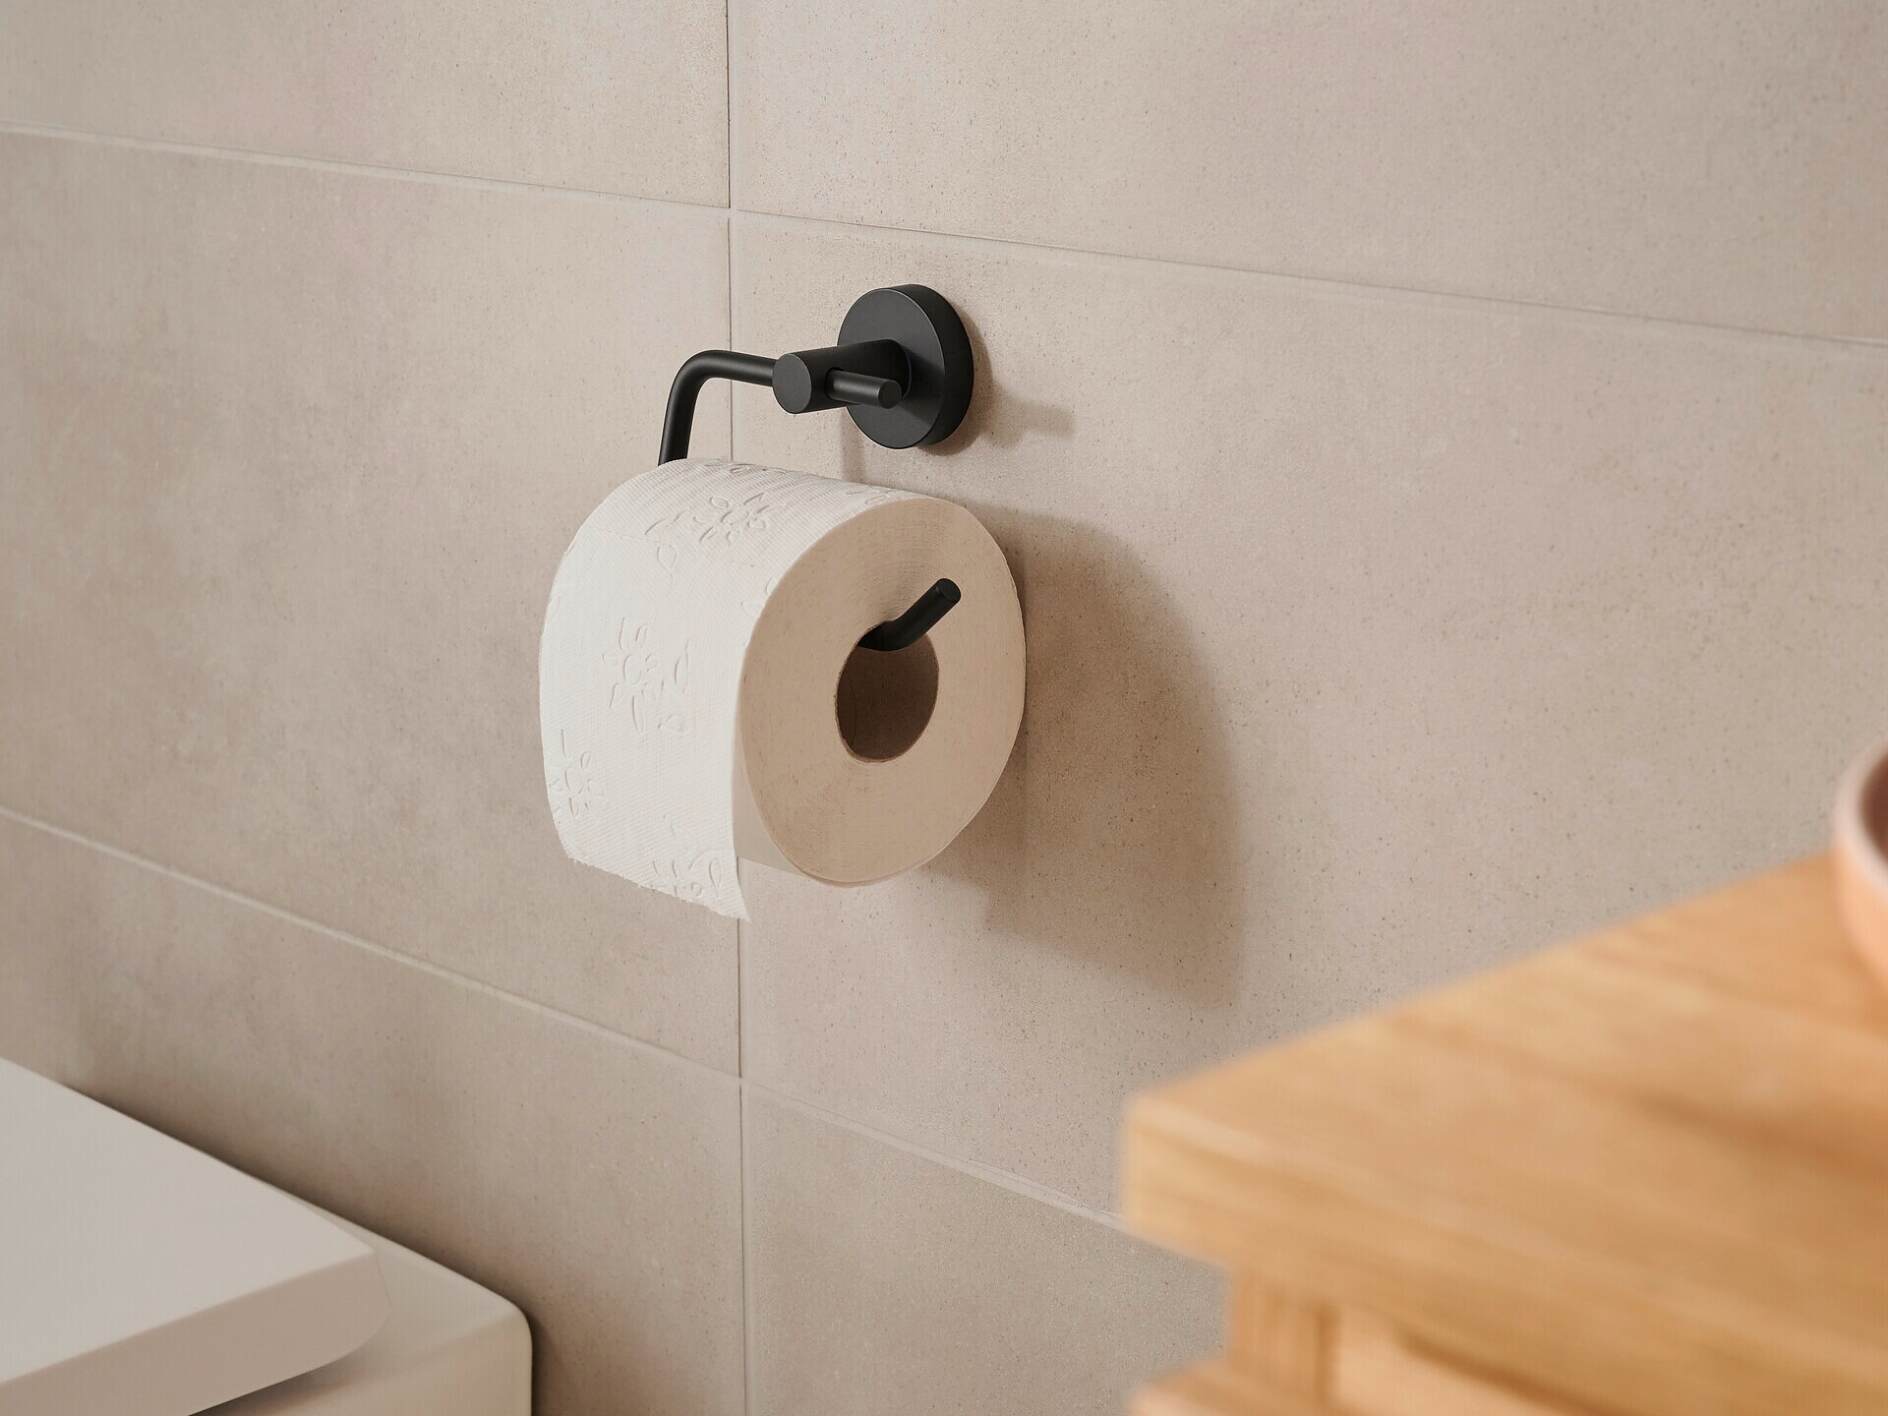 Porte-rouleau de papier toilette Support de cadre noir mat